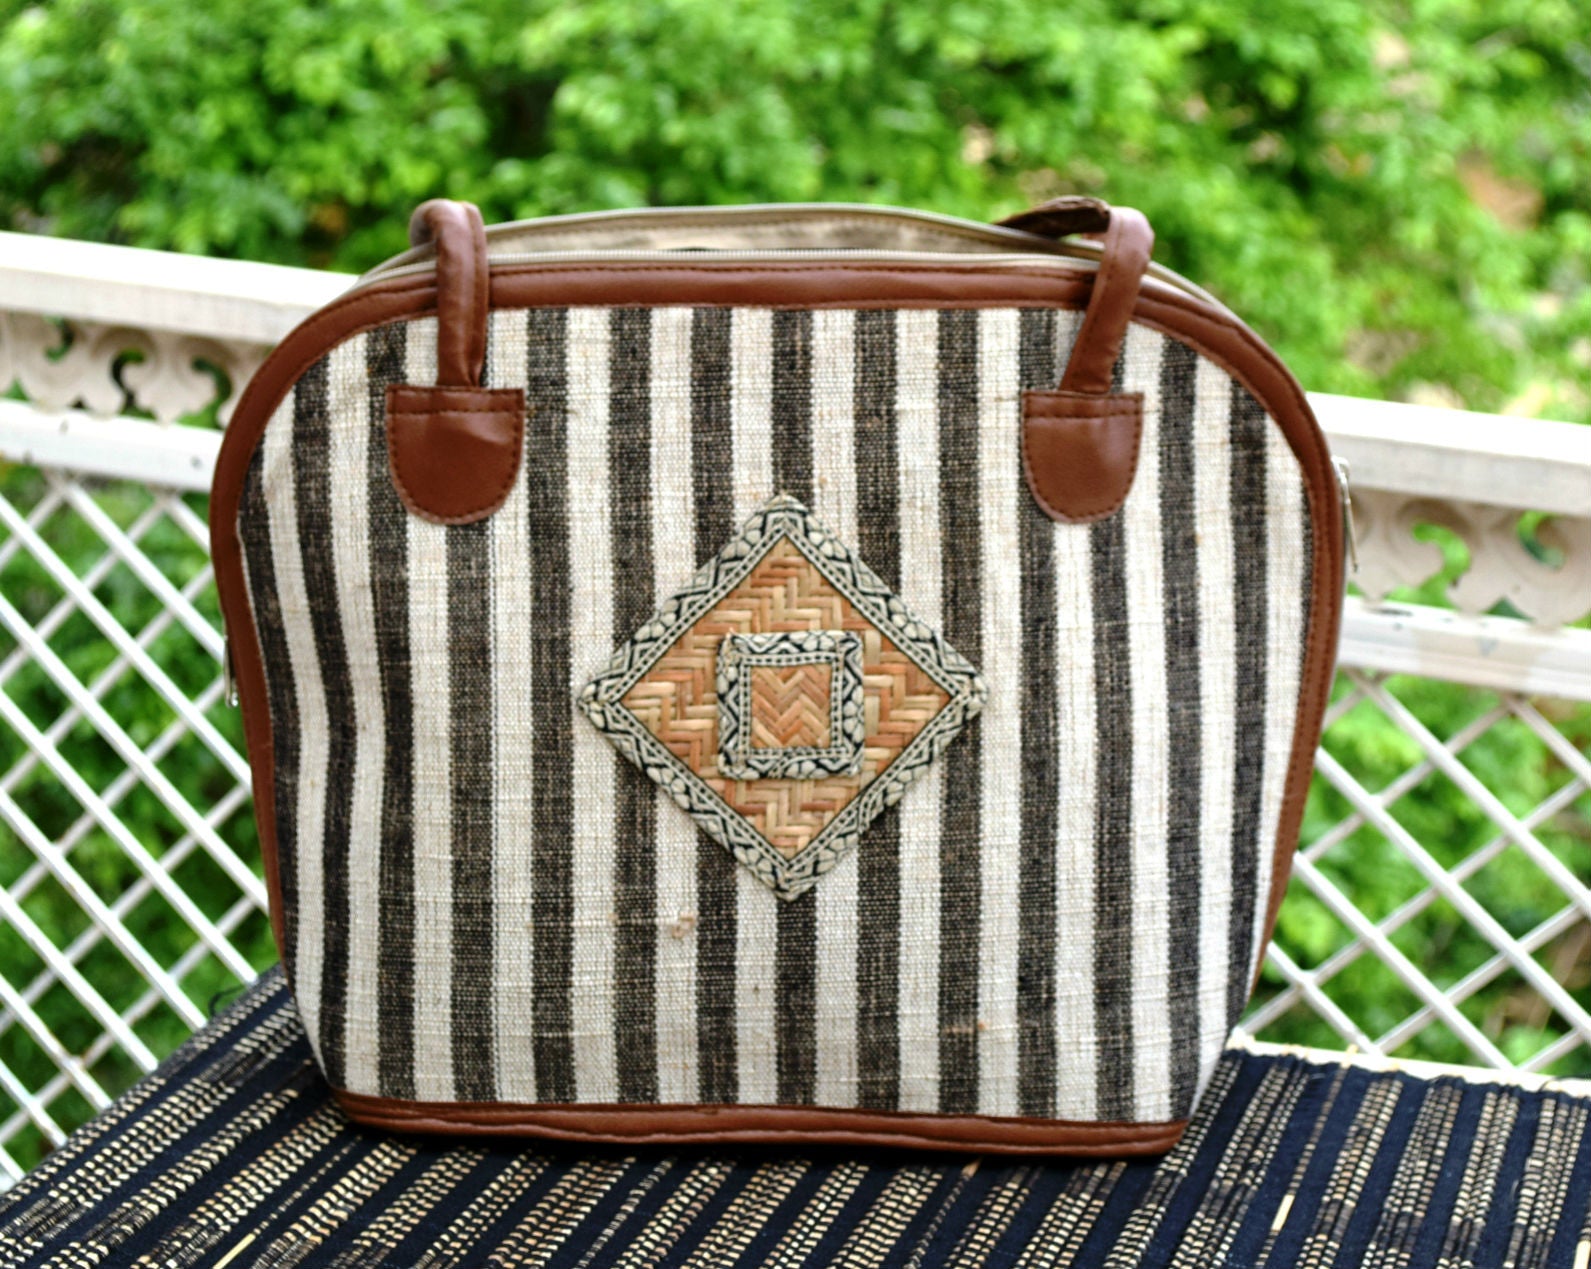 Striped Handbag